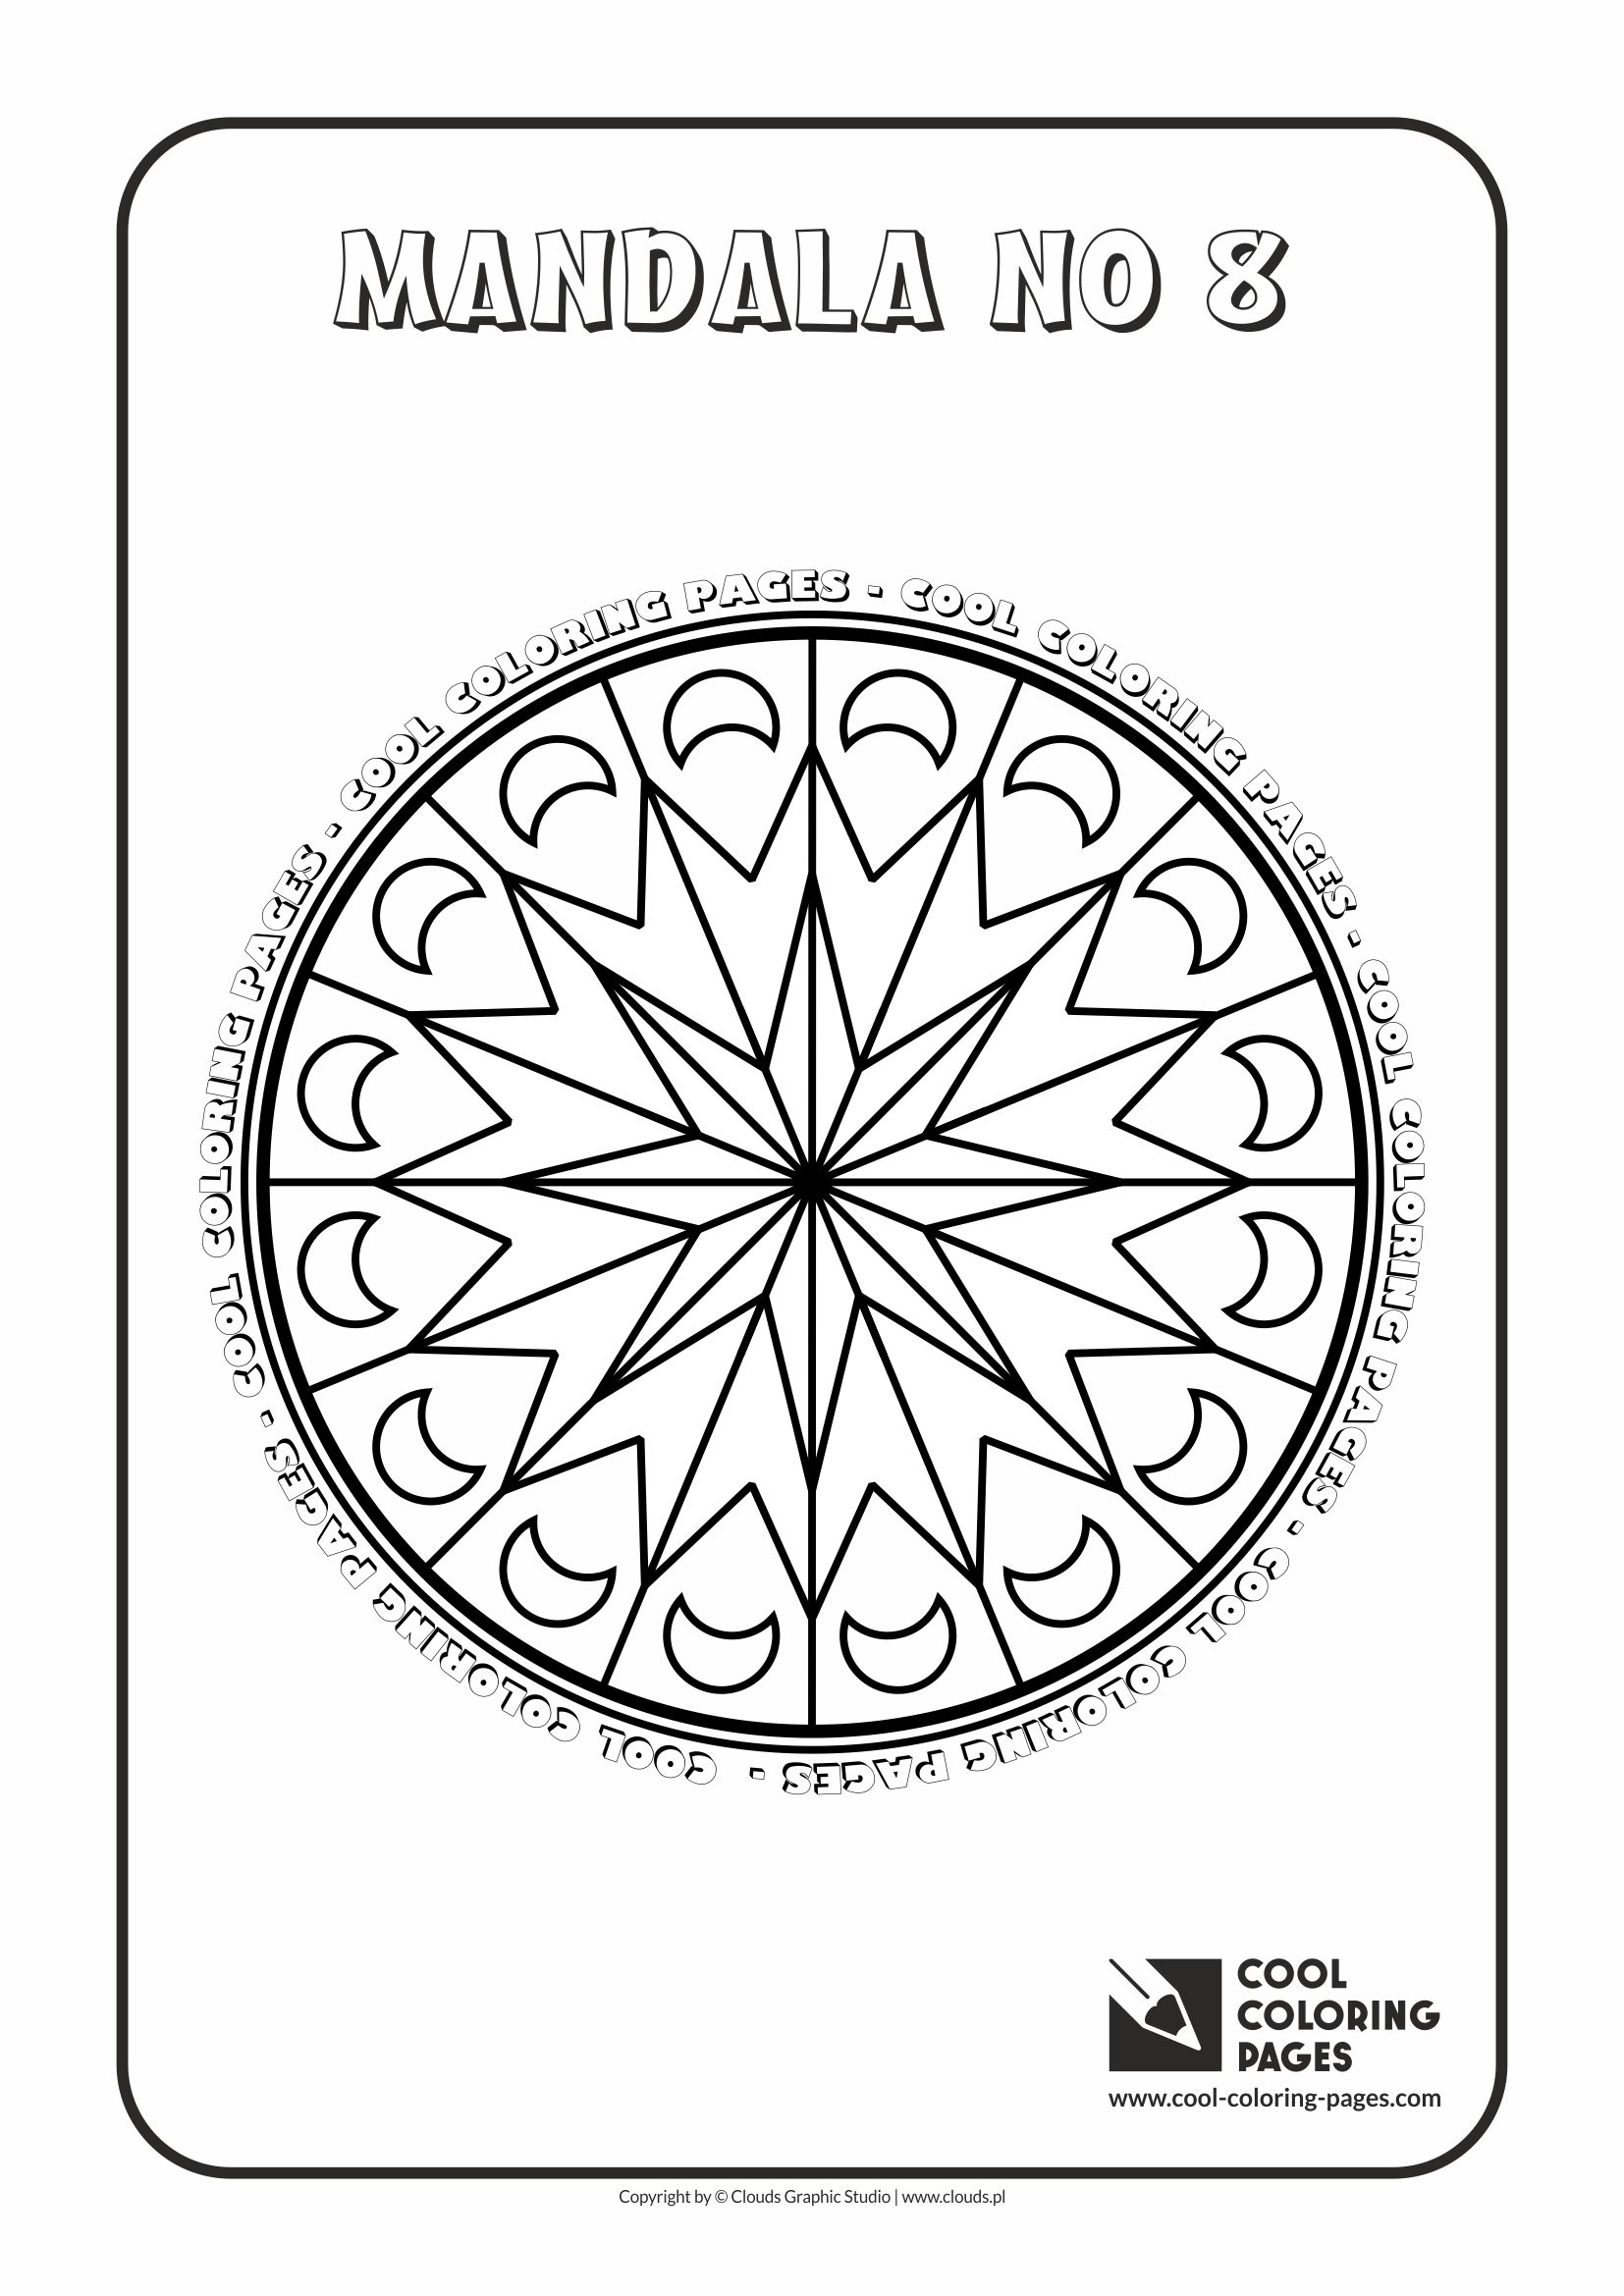 Cool Coloring Pages - Mandalas / Mandala no 8